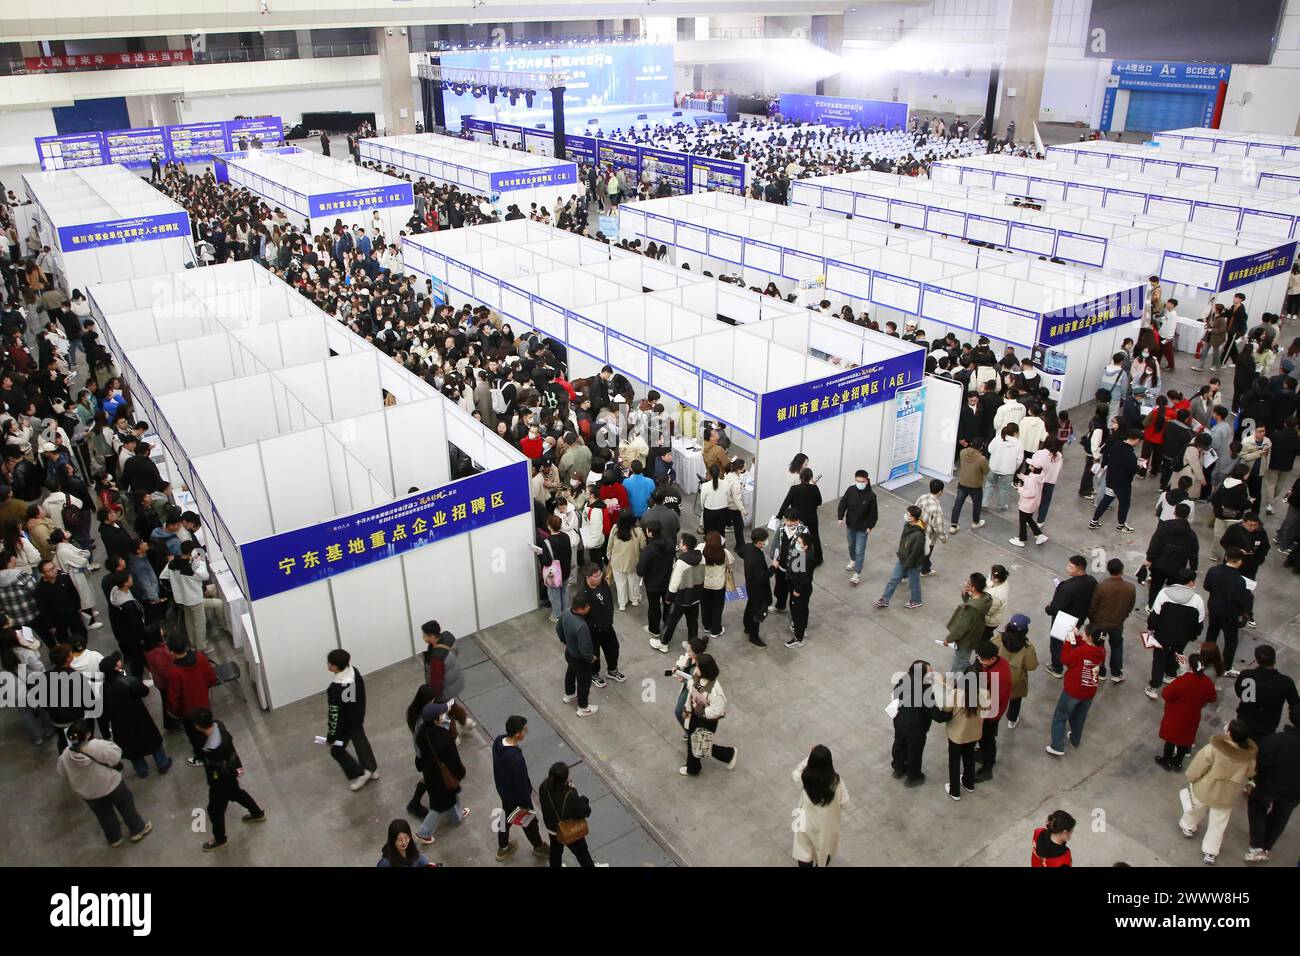 Les diplômés de l'université cherchent un emploi lors d'un salon de l'emploi dans la ville de Yinchuan, dans la région autonome de Ningxia, au nord-ouest de la Chine, le 23 mars 2024. Banque D'Images